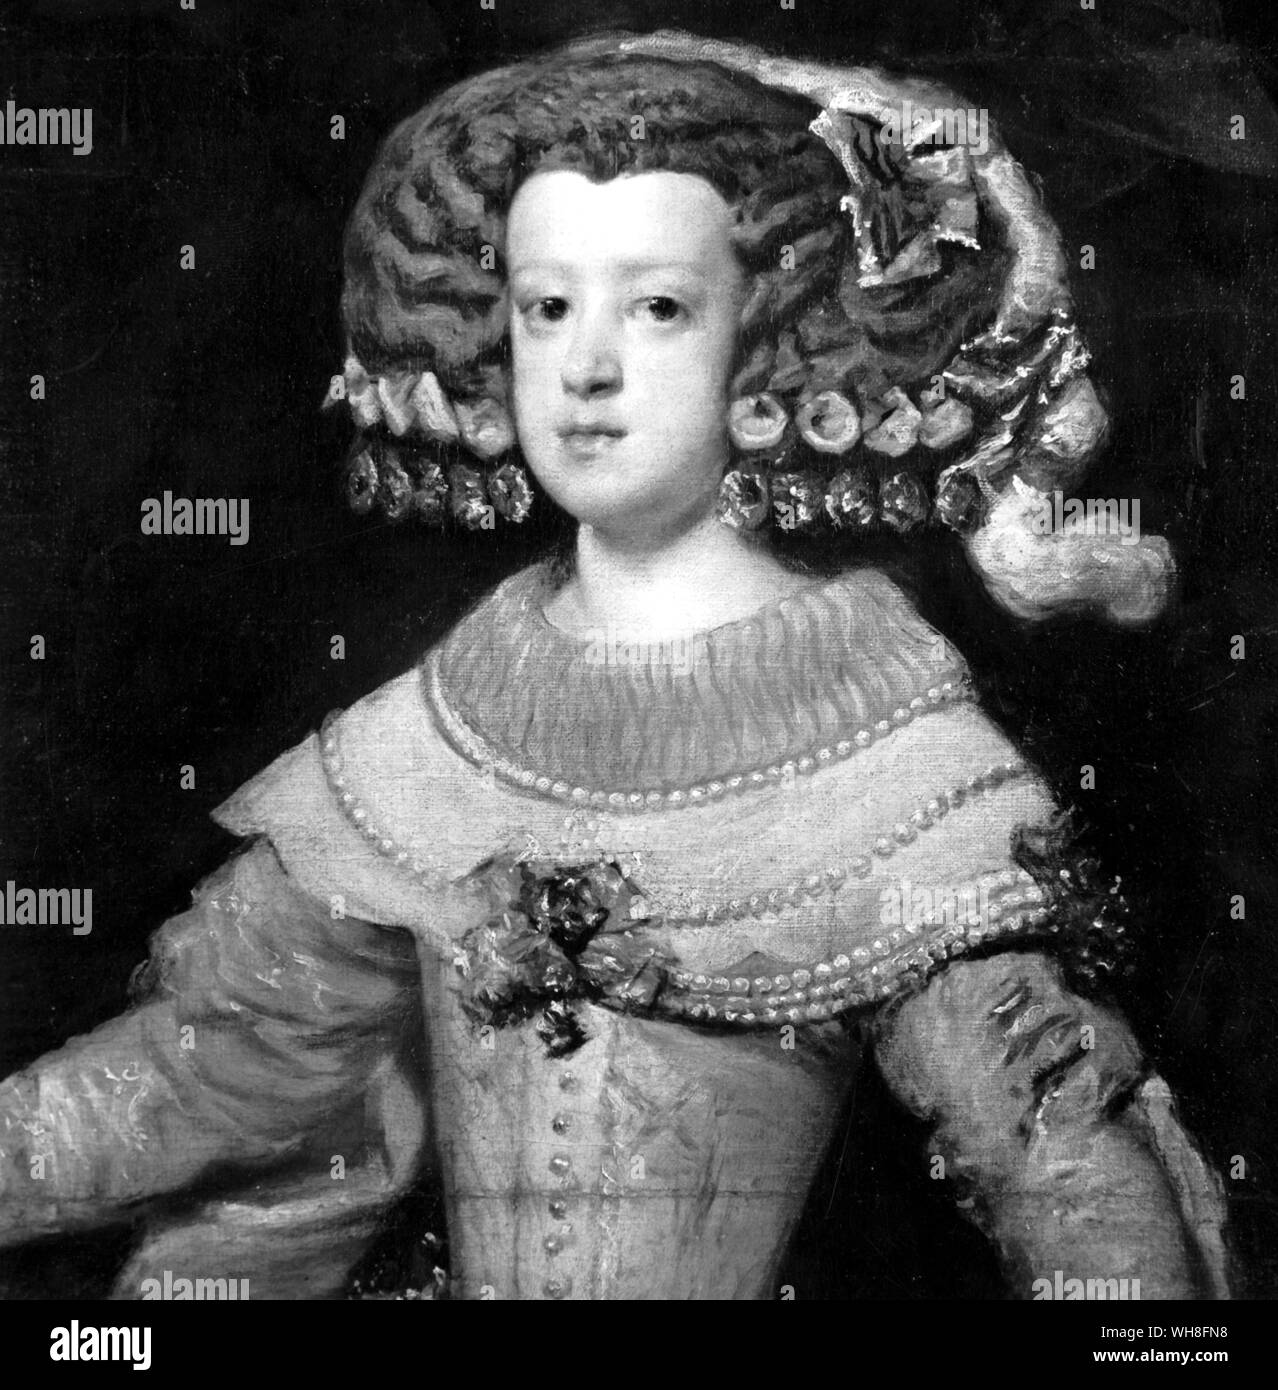 Marie Therese como Infanta por Diego Velázquez (1599-1660), pintor barroco español. Maria Teresa de España (Francés: Marie Thérèse) (1638-1683), reina consorte de Francia como esposa de Luis XIV de Francia, nació en El Escorial como la hija de Felipe IV de España y de Isabel de Francia (1602-1644). . . . . . . Foto de stock